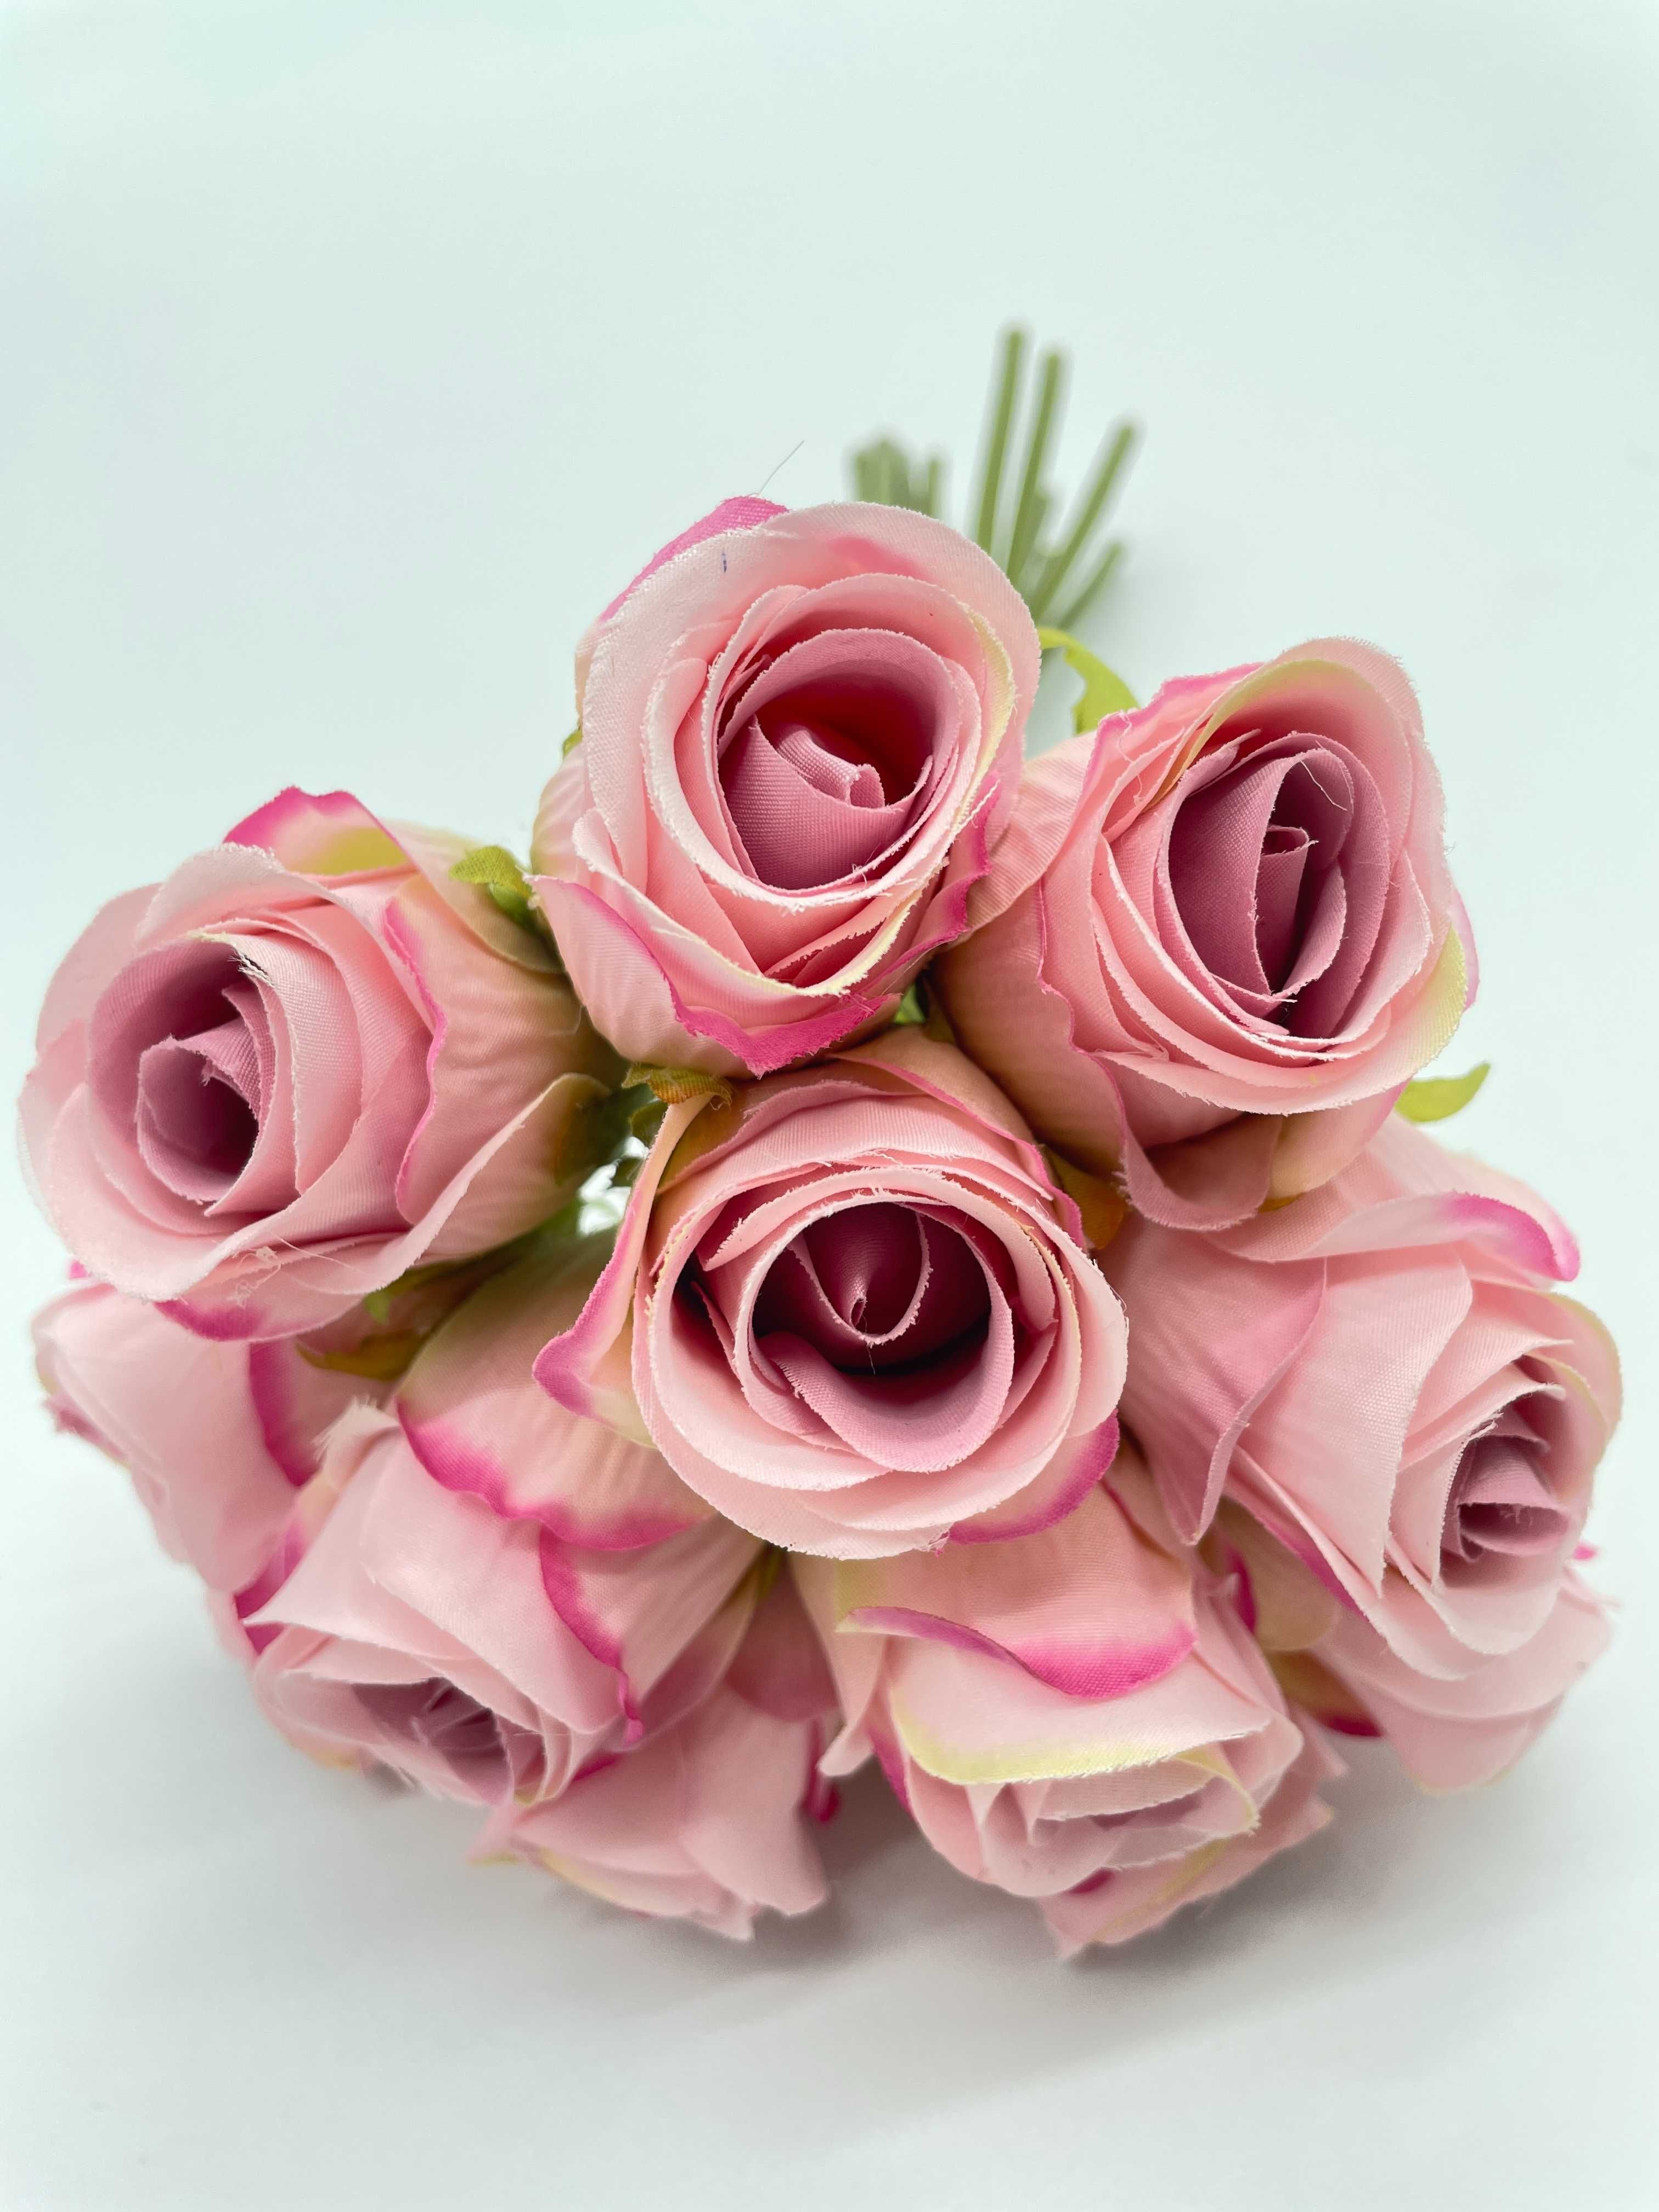 Sztuczny Bukiet Róż 24cm Do Wazonu Główki Kwiatowe Jasny Róż